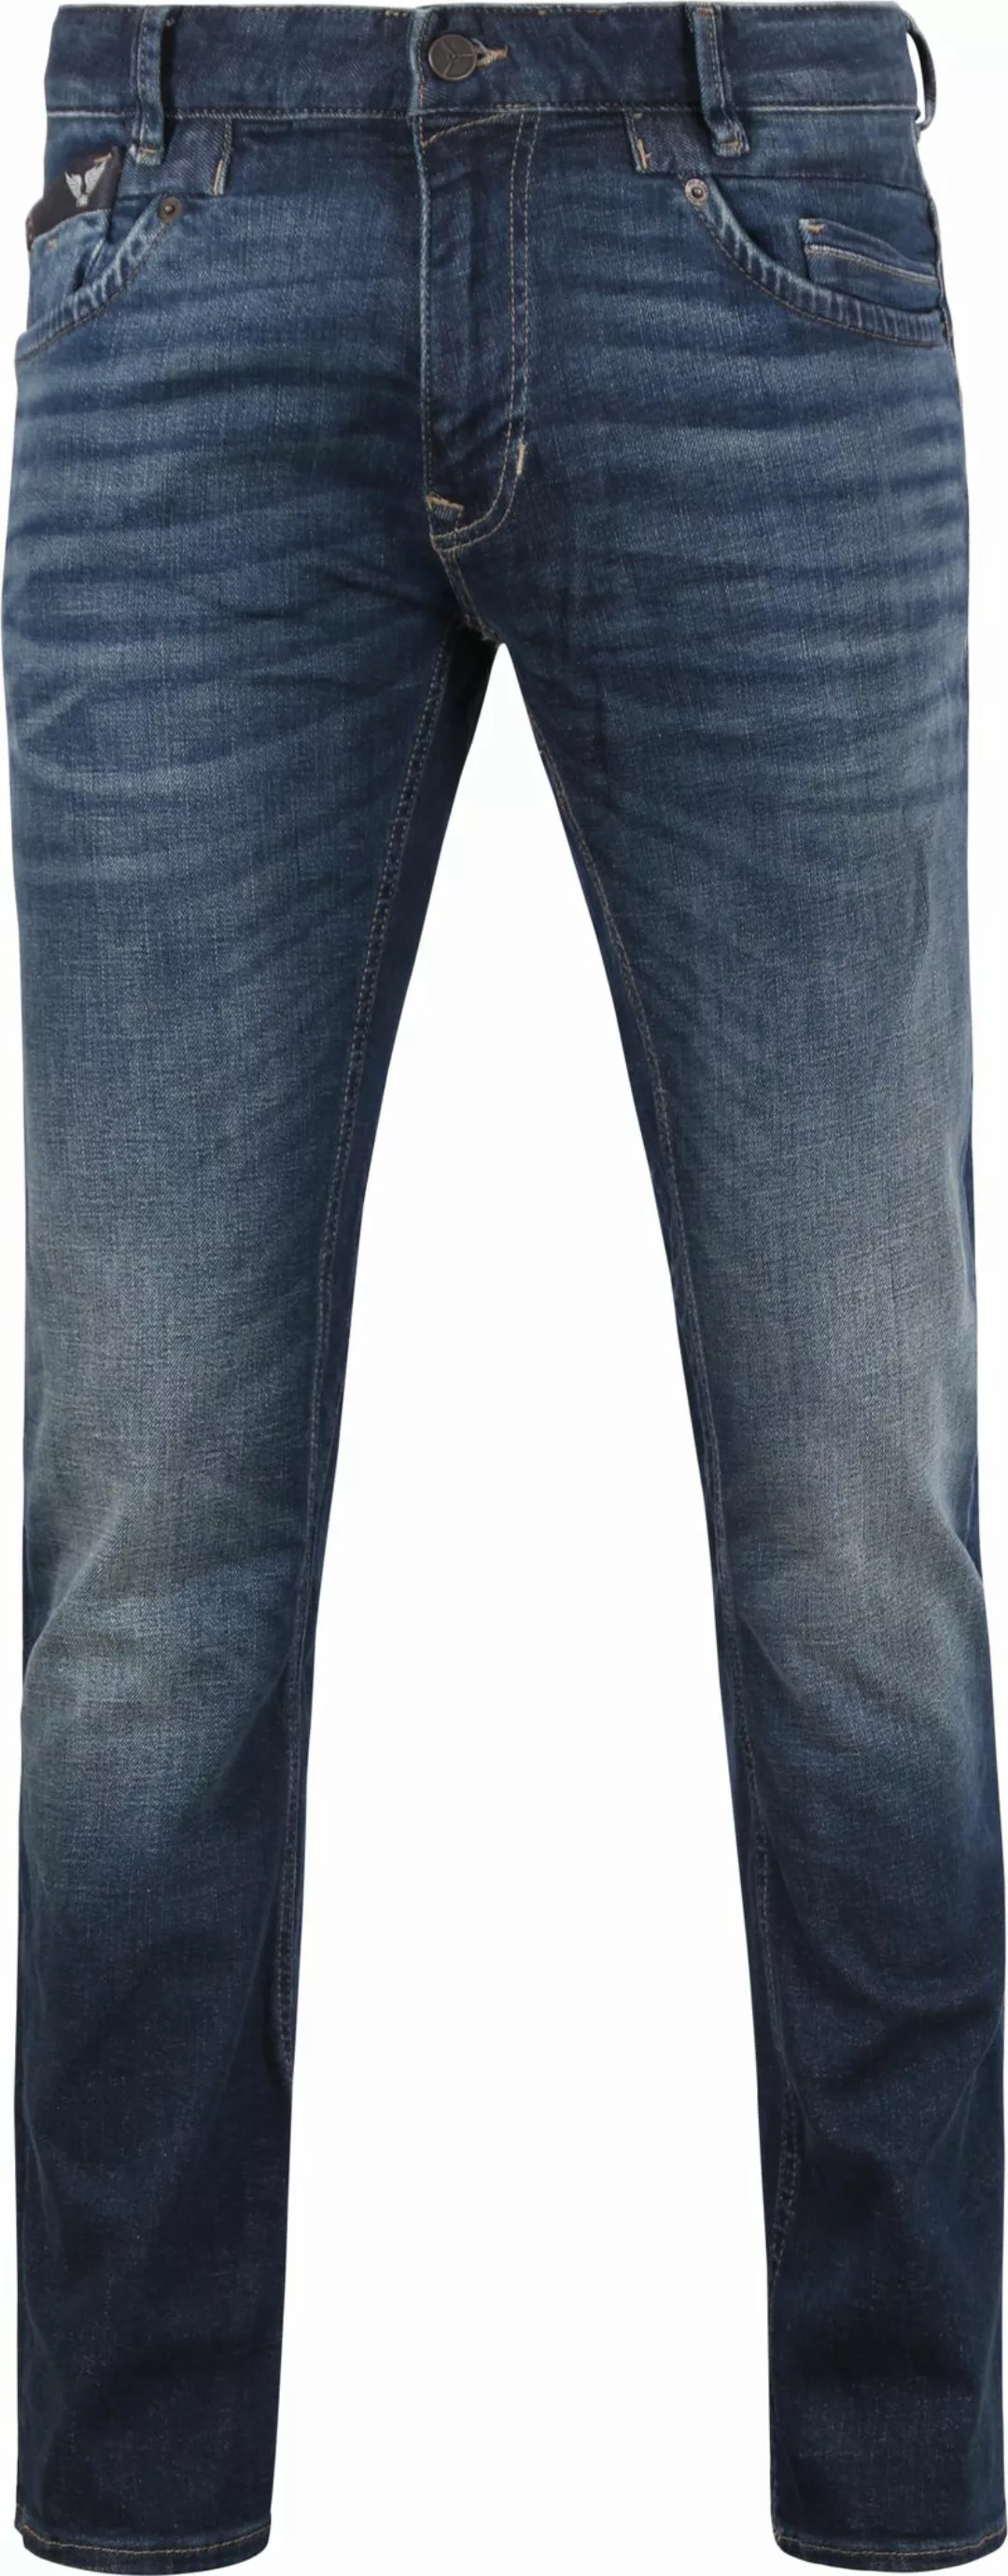 PME Legend Commander 3.0 Jeans Blau DBF - Größe W 35 - L 36 günstig online kaufen